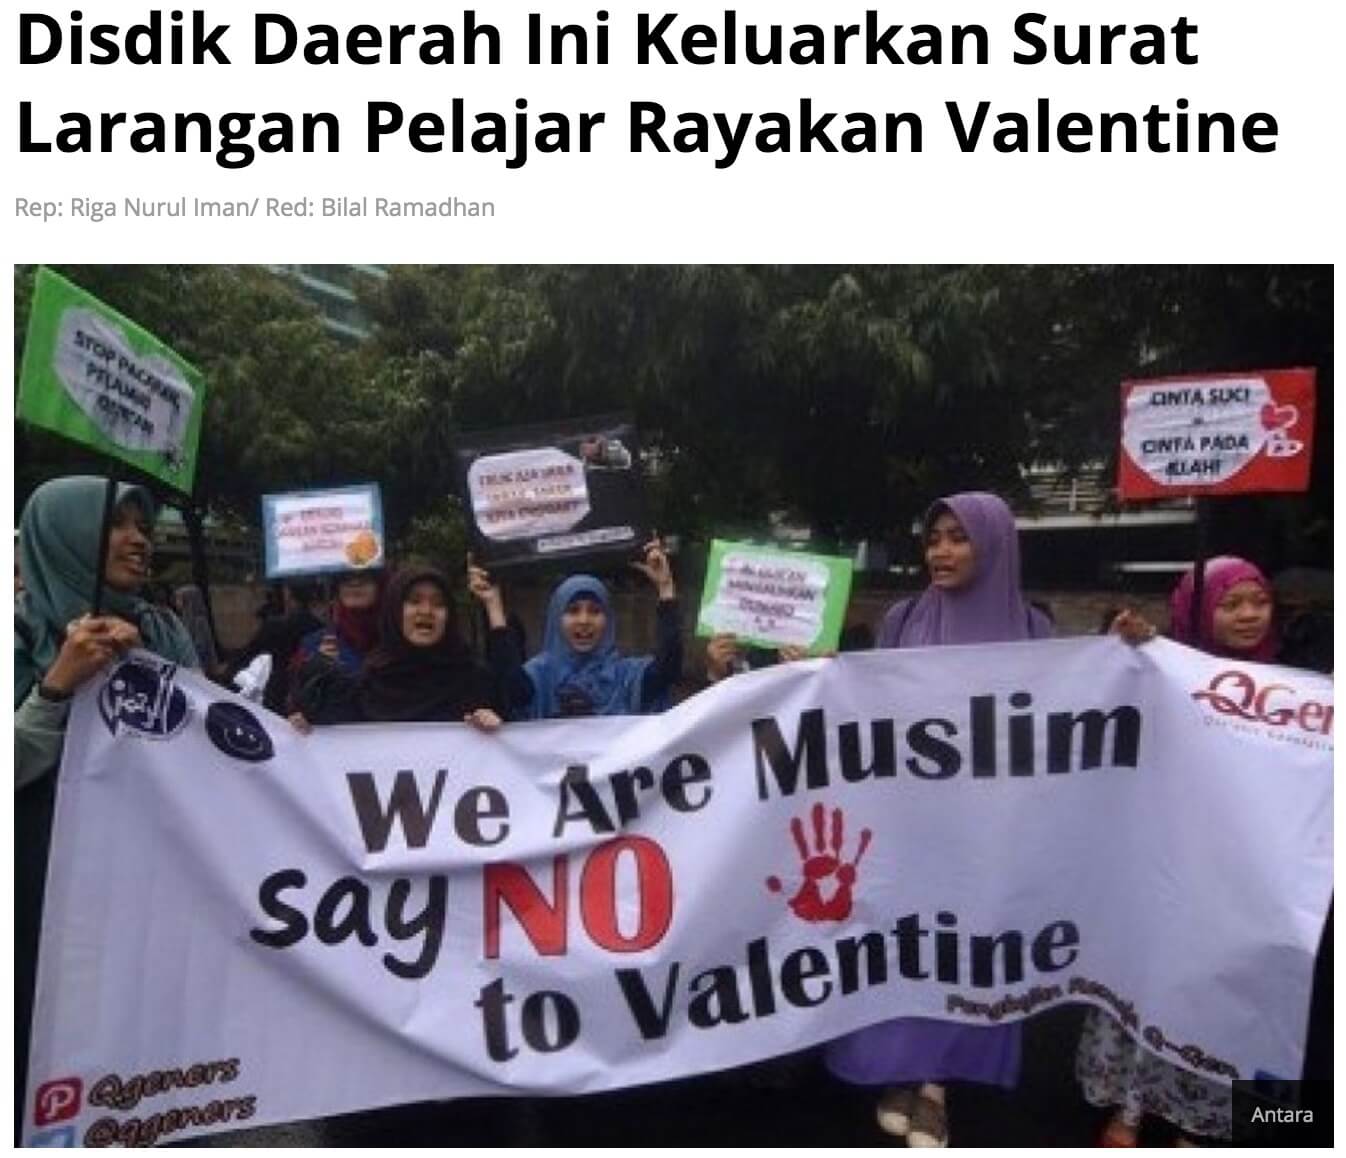 インドネシアのバレンタイン 禁止 RepublikaOnline